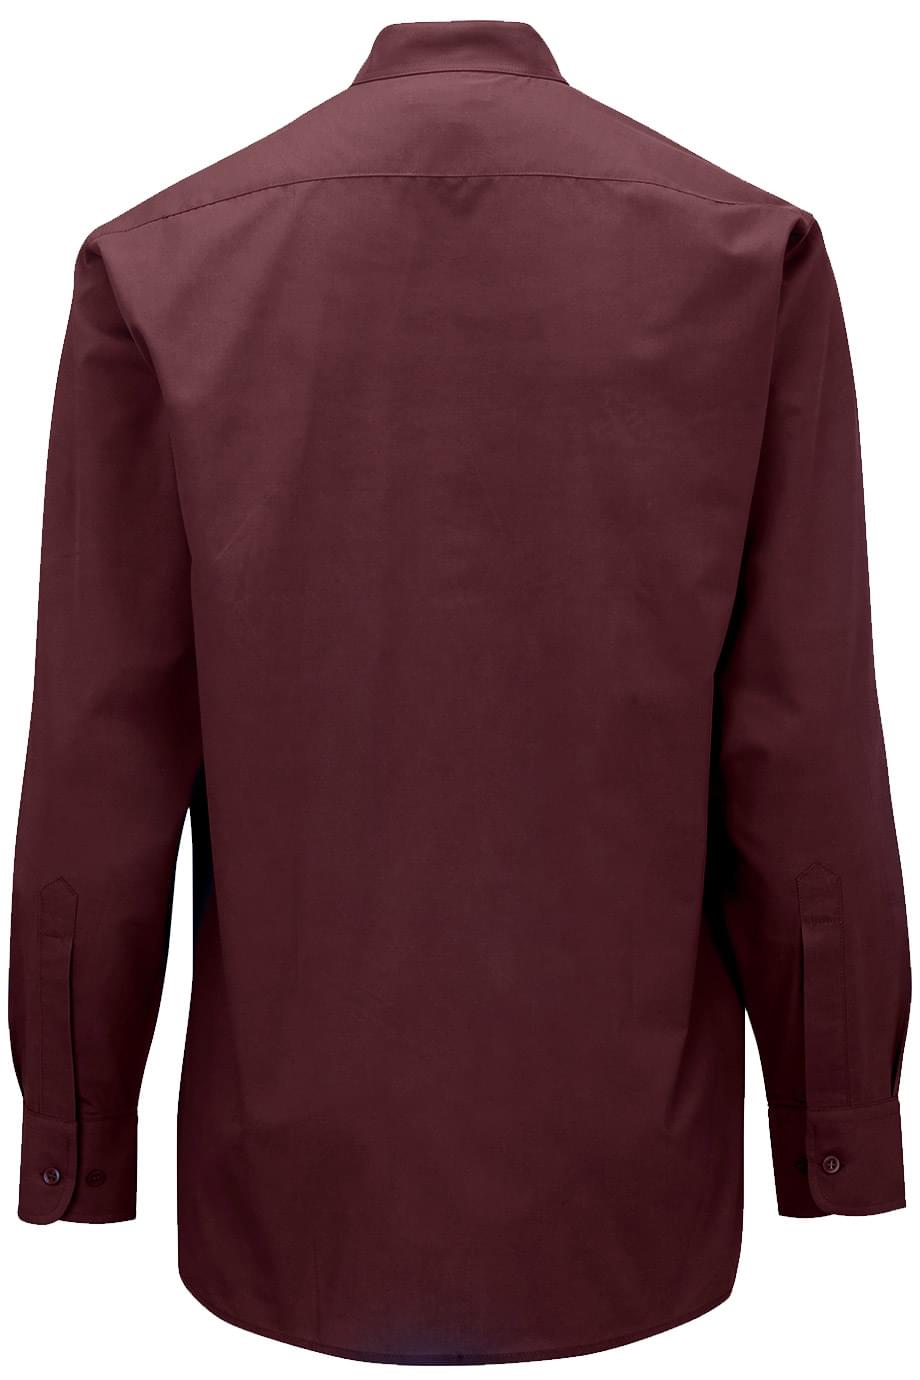 Men's Banded Collar Long-Sleeve Shirt, Burgundy [Left Chest / VCL All White]